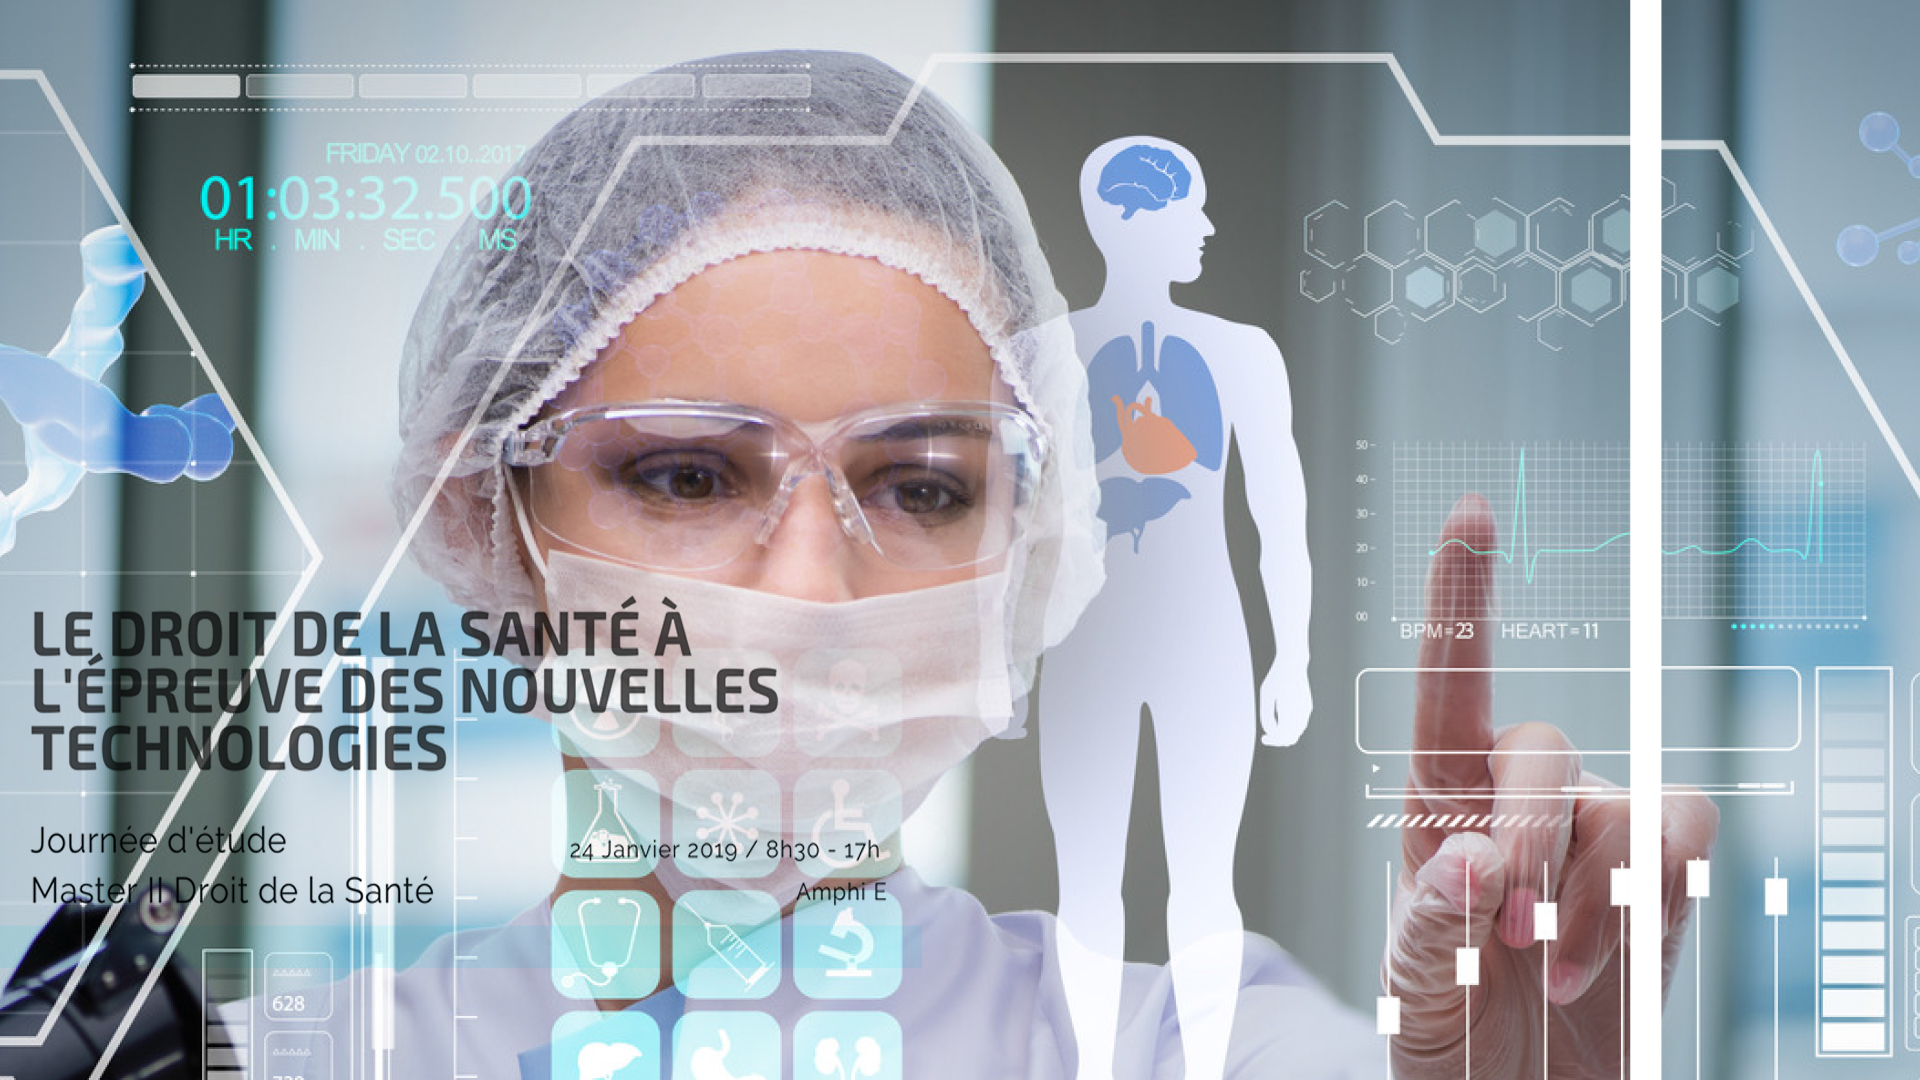 Le droit de la santé à l'épreuve des nouvelles technologies :
Dr. Birmelé